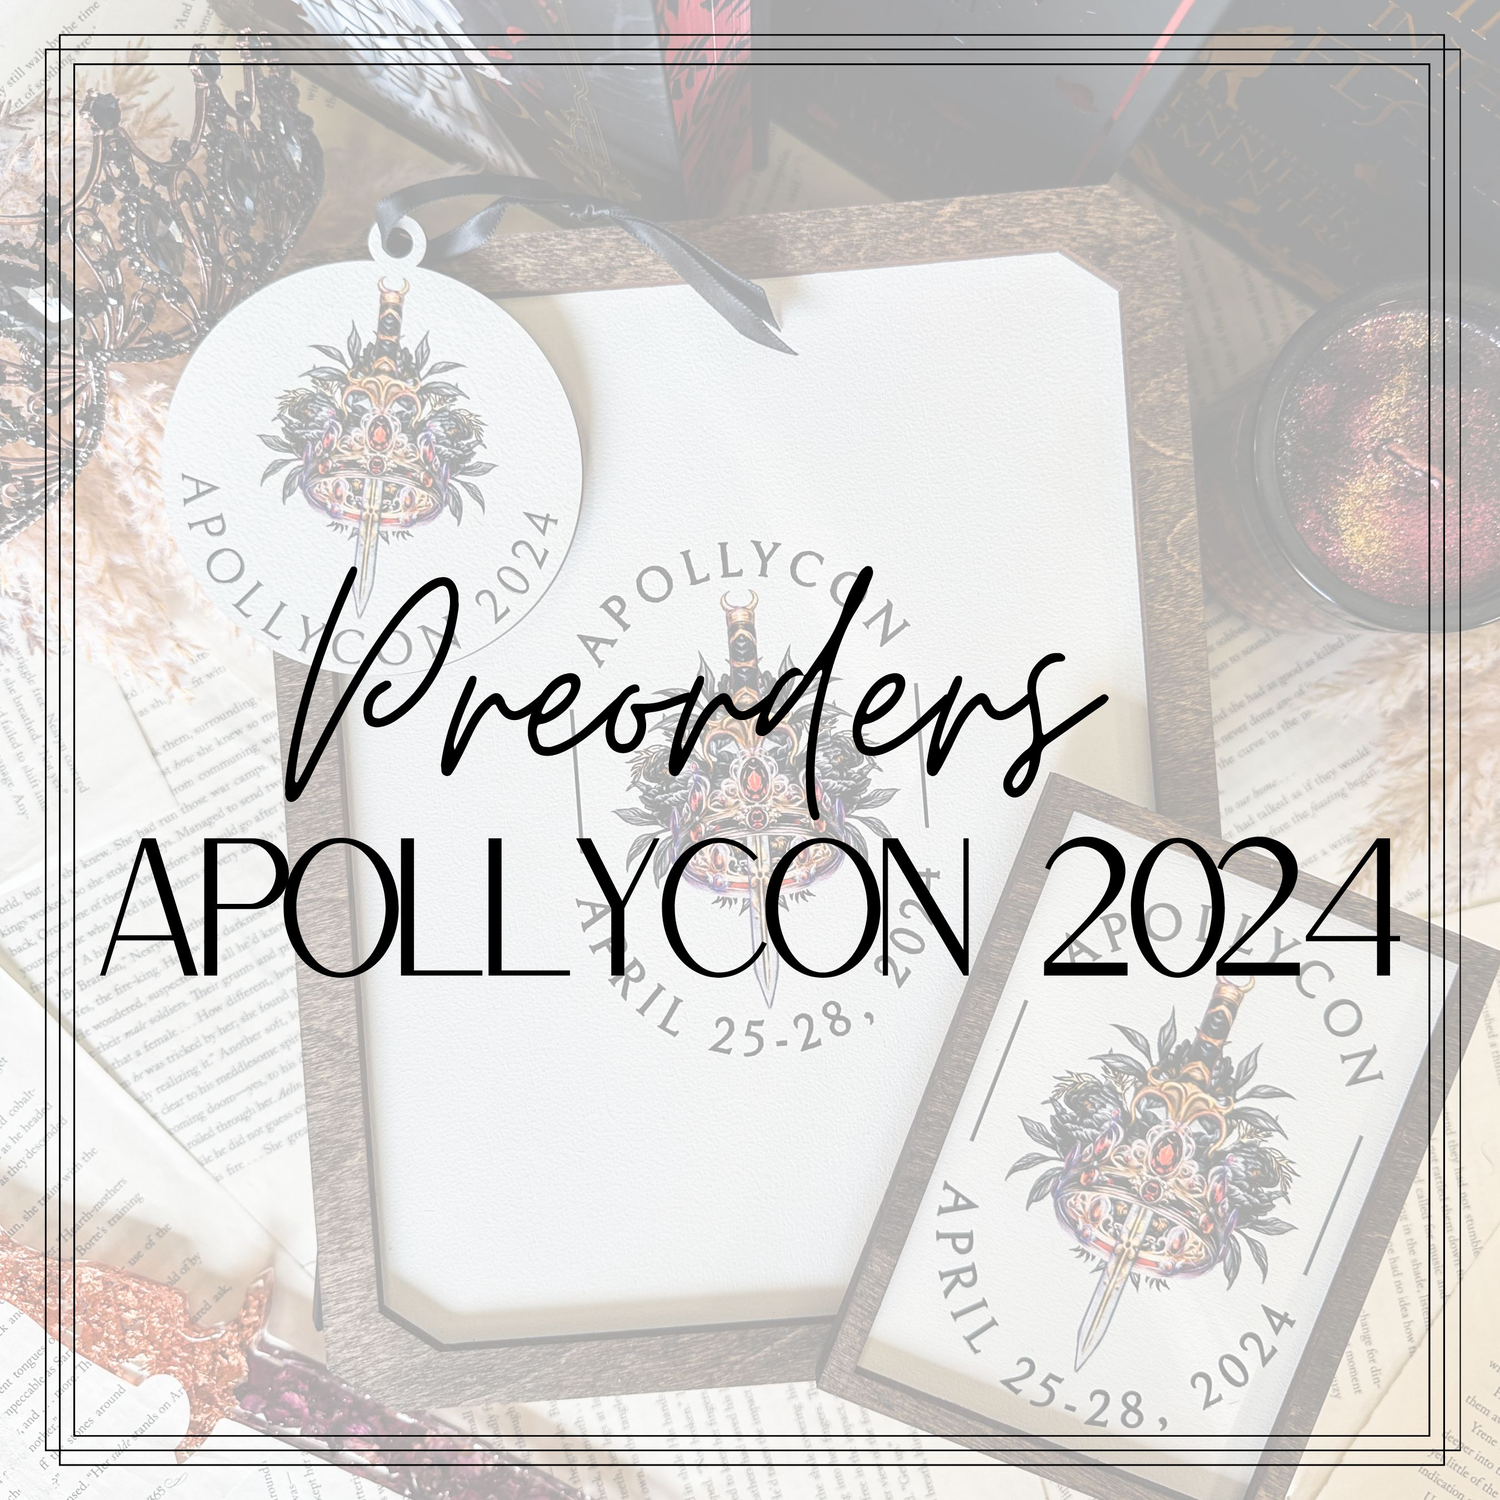 Apollycon Preorders - Opening Dec 2023